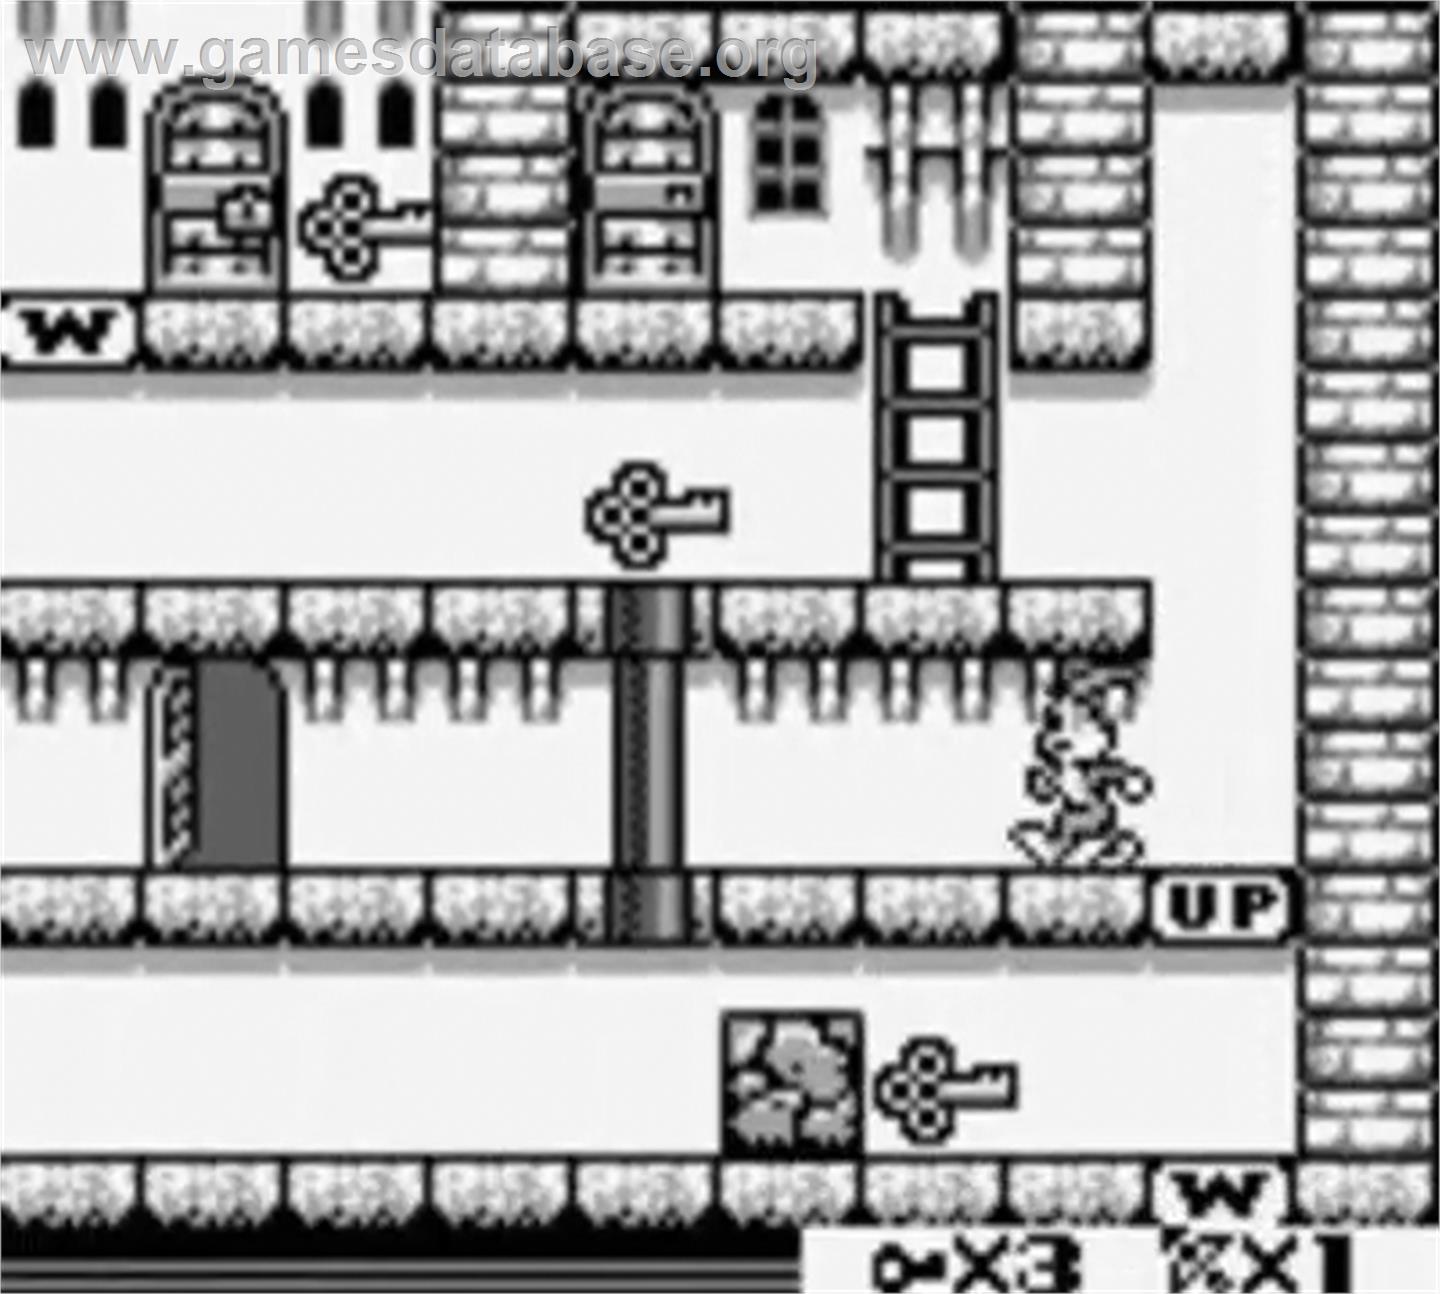 Bugs Bunny Crazy Castle 2 - Nintendo Game Boy - Artwork - In Game